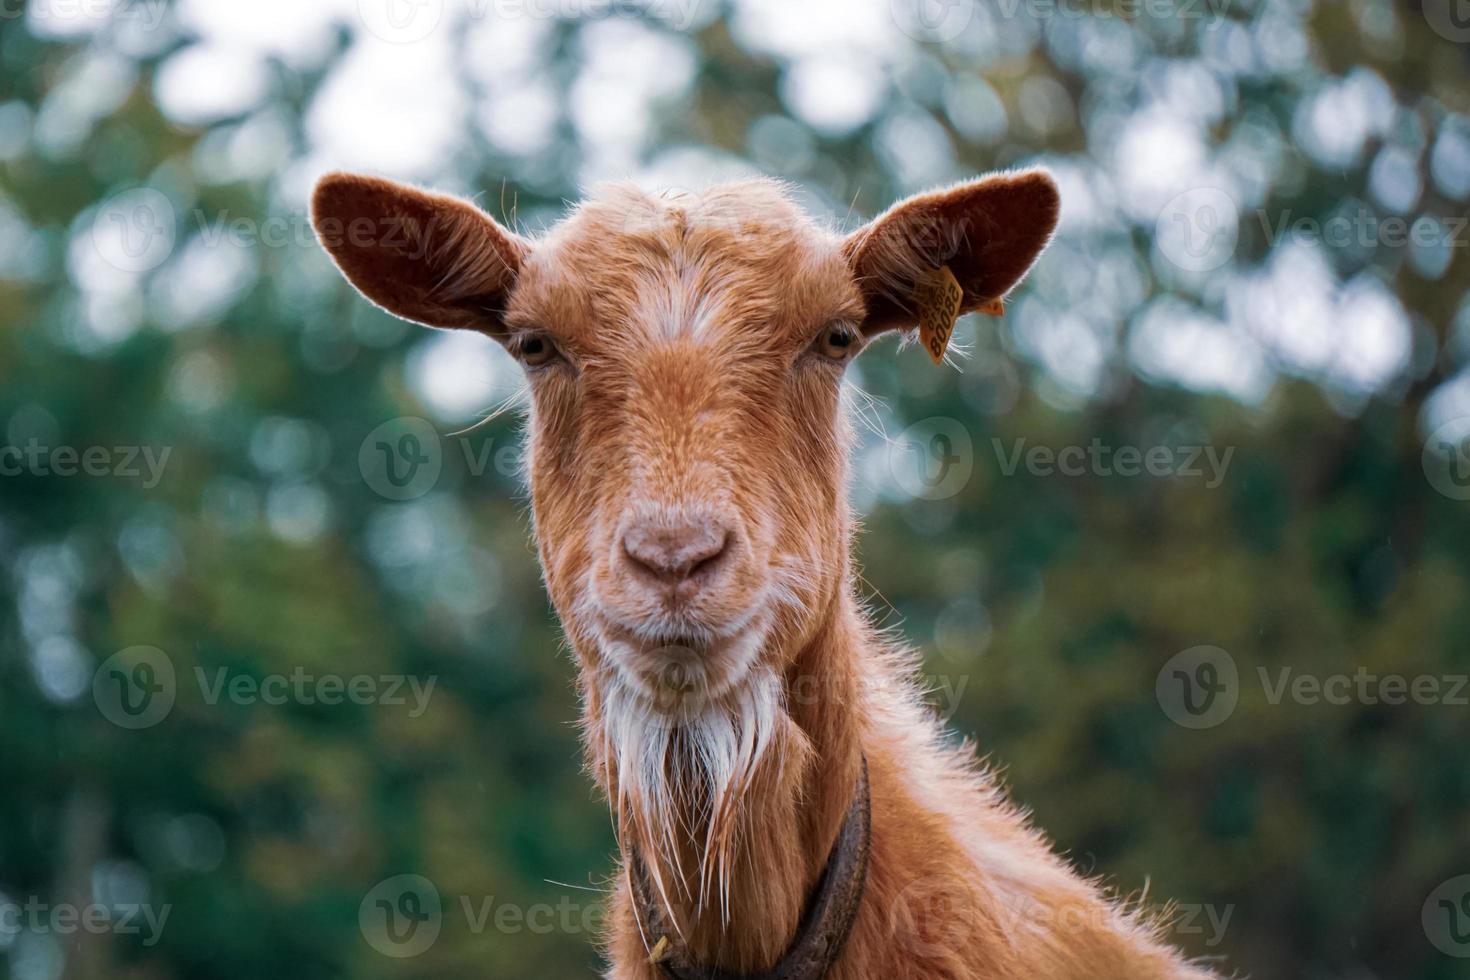 hermosa marrón cabra retrato en el granja foto